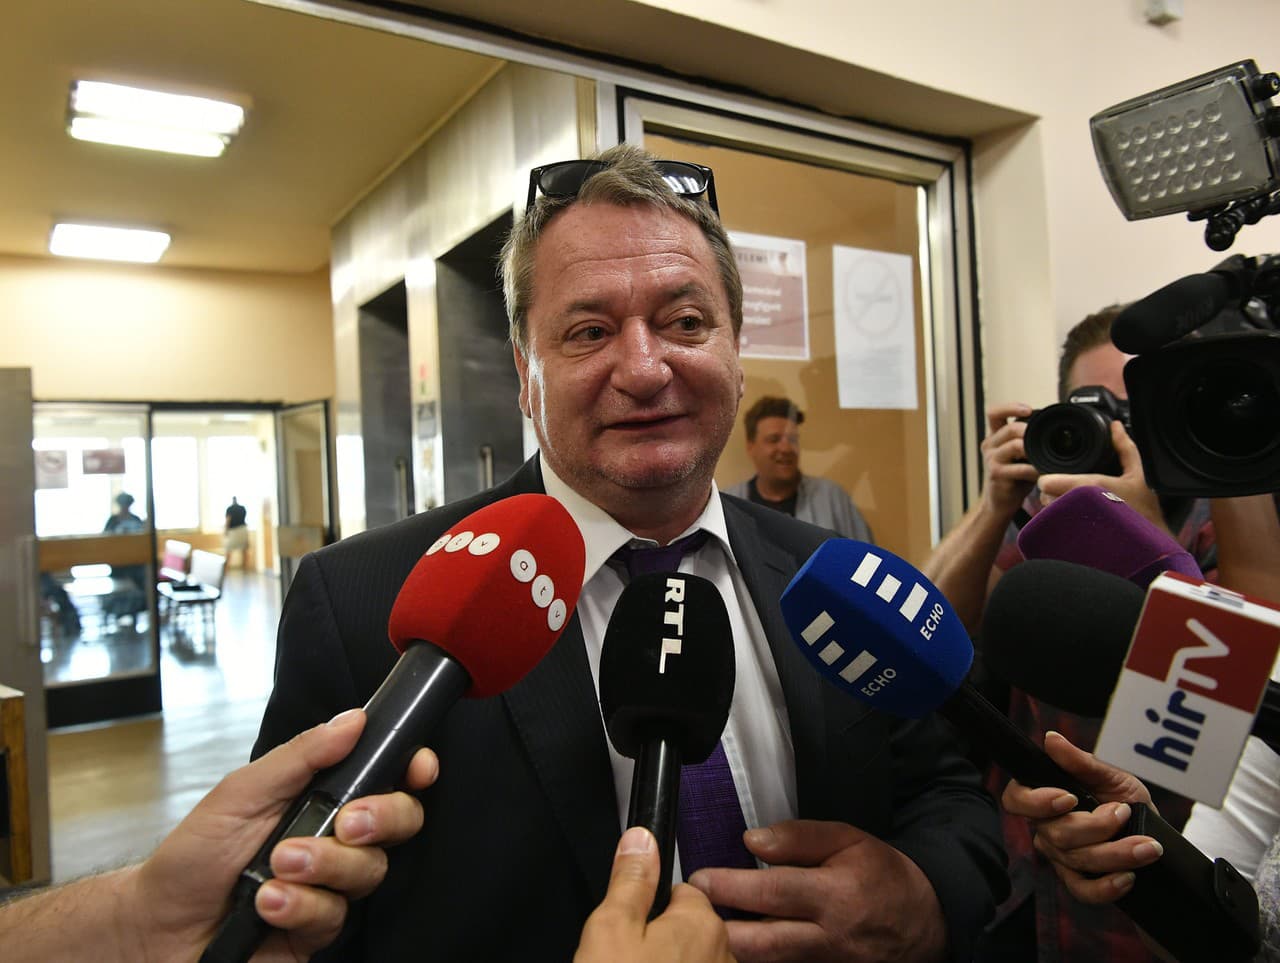 Maďarský poslanec Európskeho parlamentu (EP) za ultrapravicovú stranu Jobbik Béla Kovács